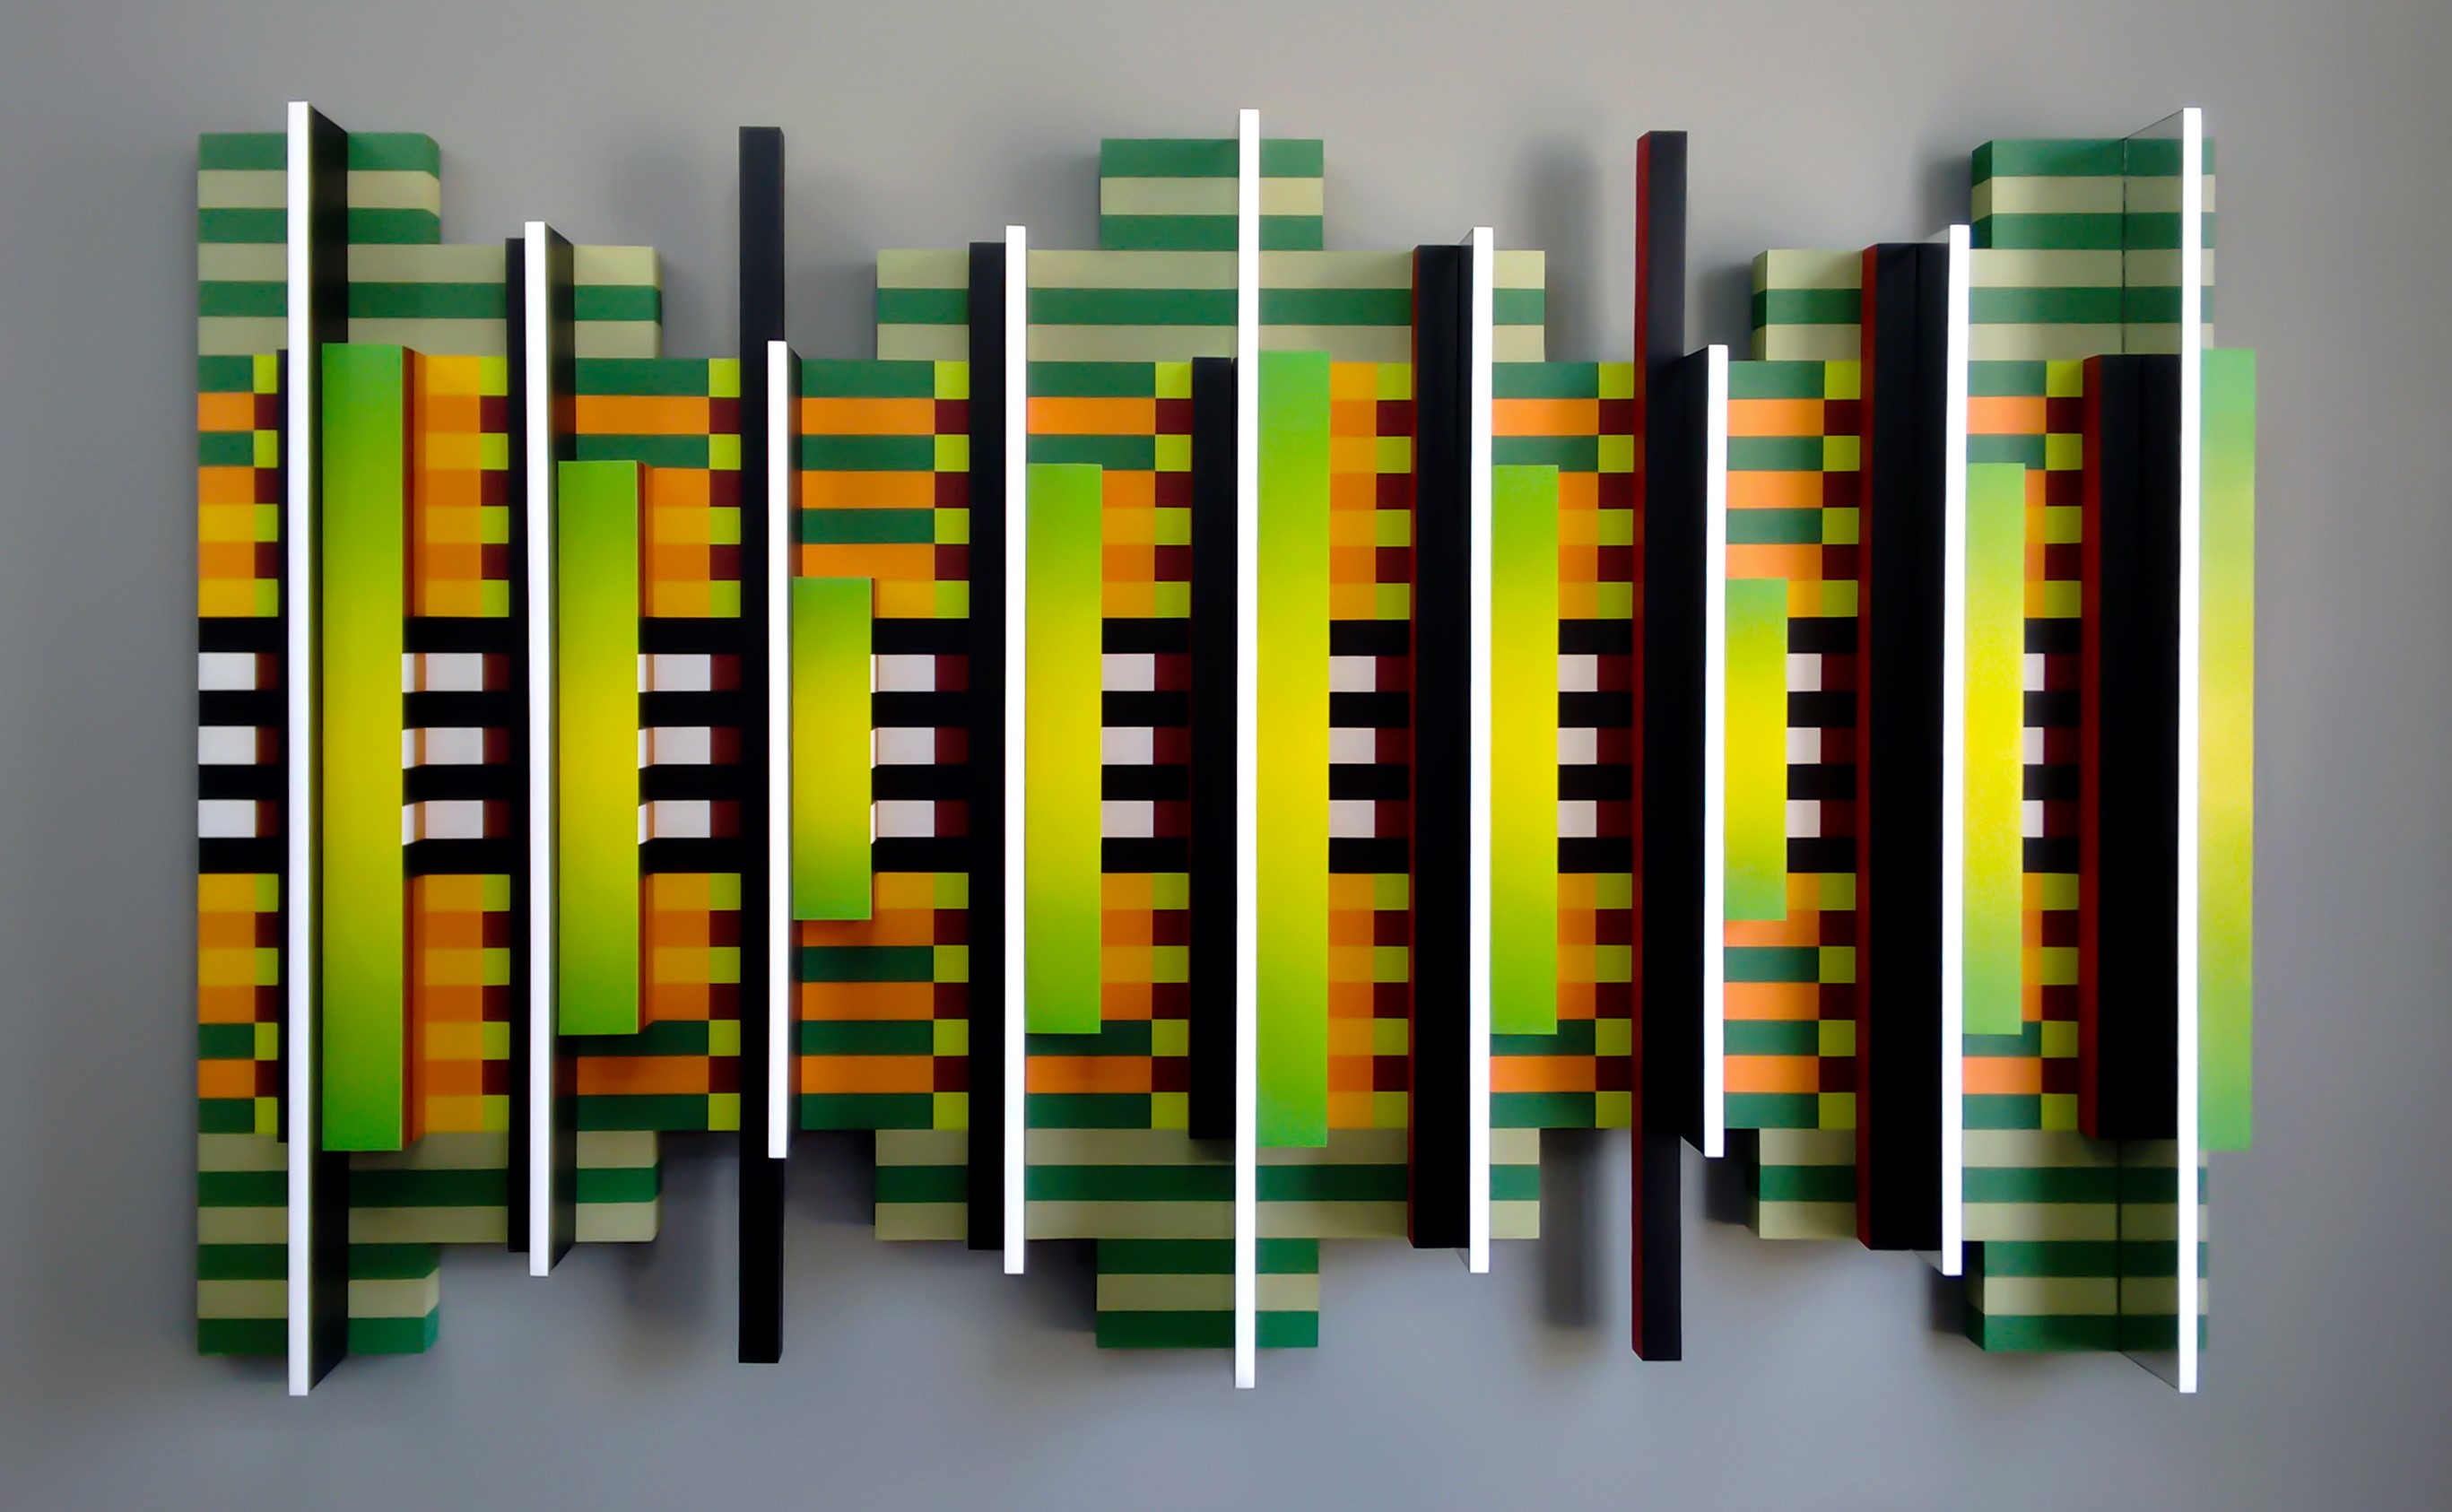 Robson Macedo, Podcast, Esmalte sintético, tinta acrílica, pet, pvc, acrílico e espelho de acrílico sobre madeira. 110 x 180 x 15,5 cm. Rio, 2015